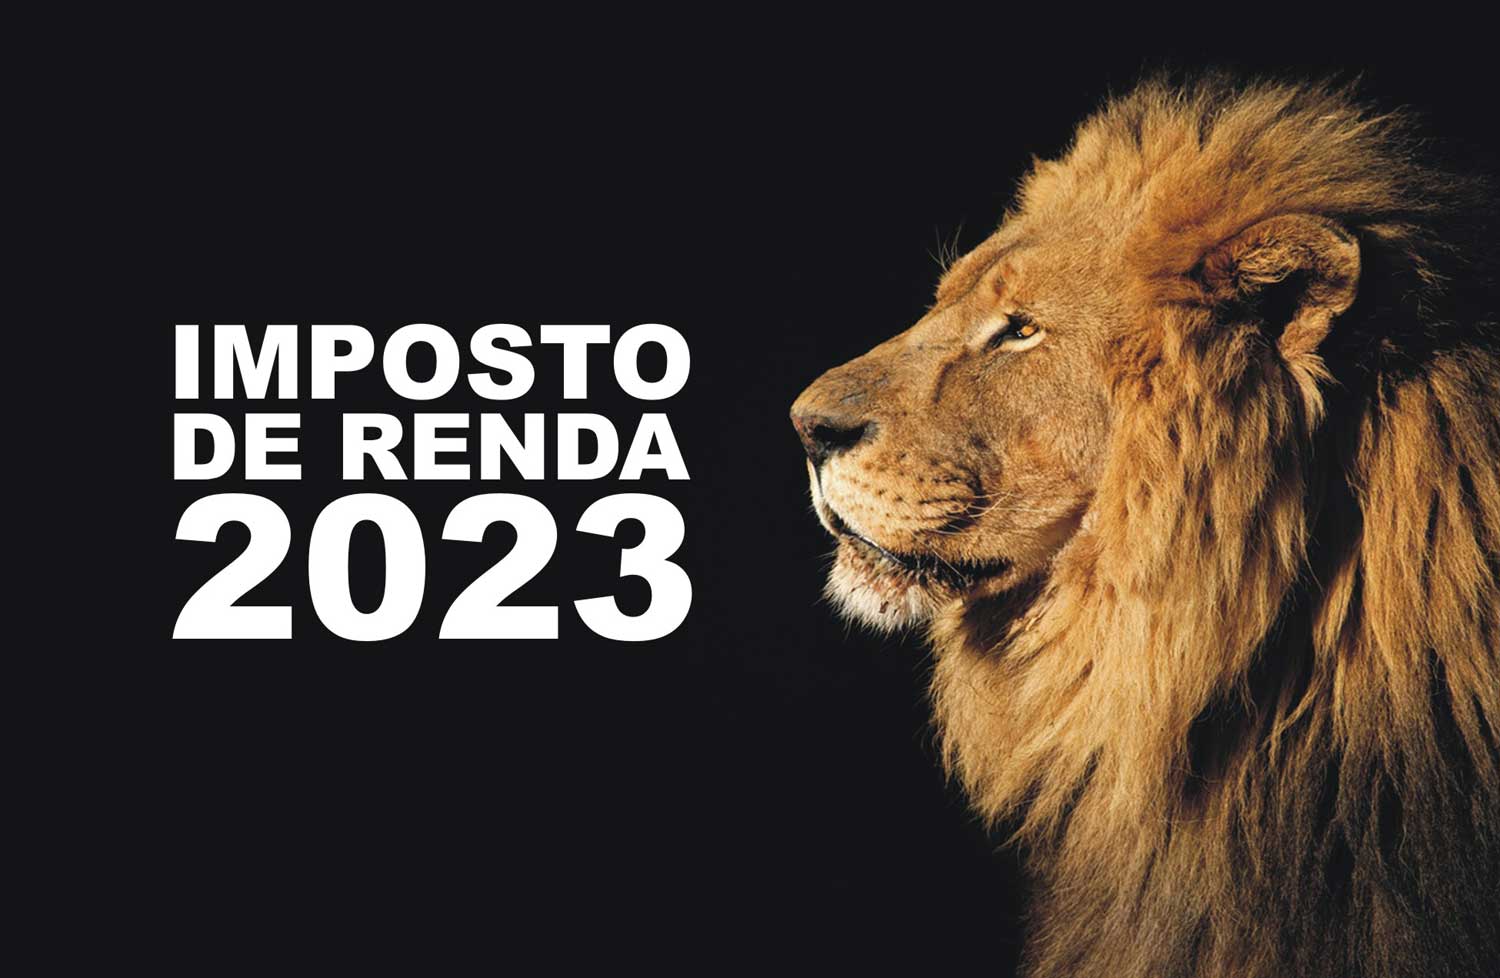 O leão, símbolo do Imposto de Renda -2023.